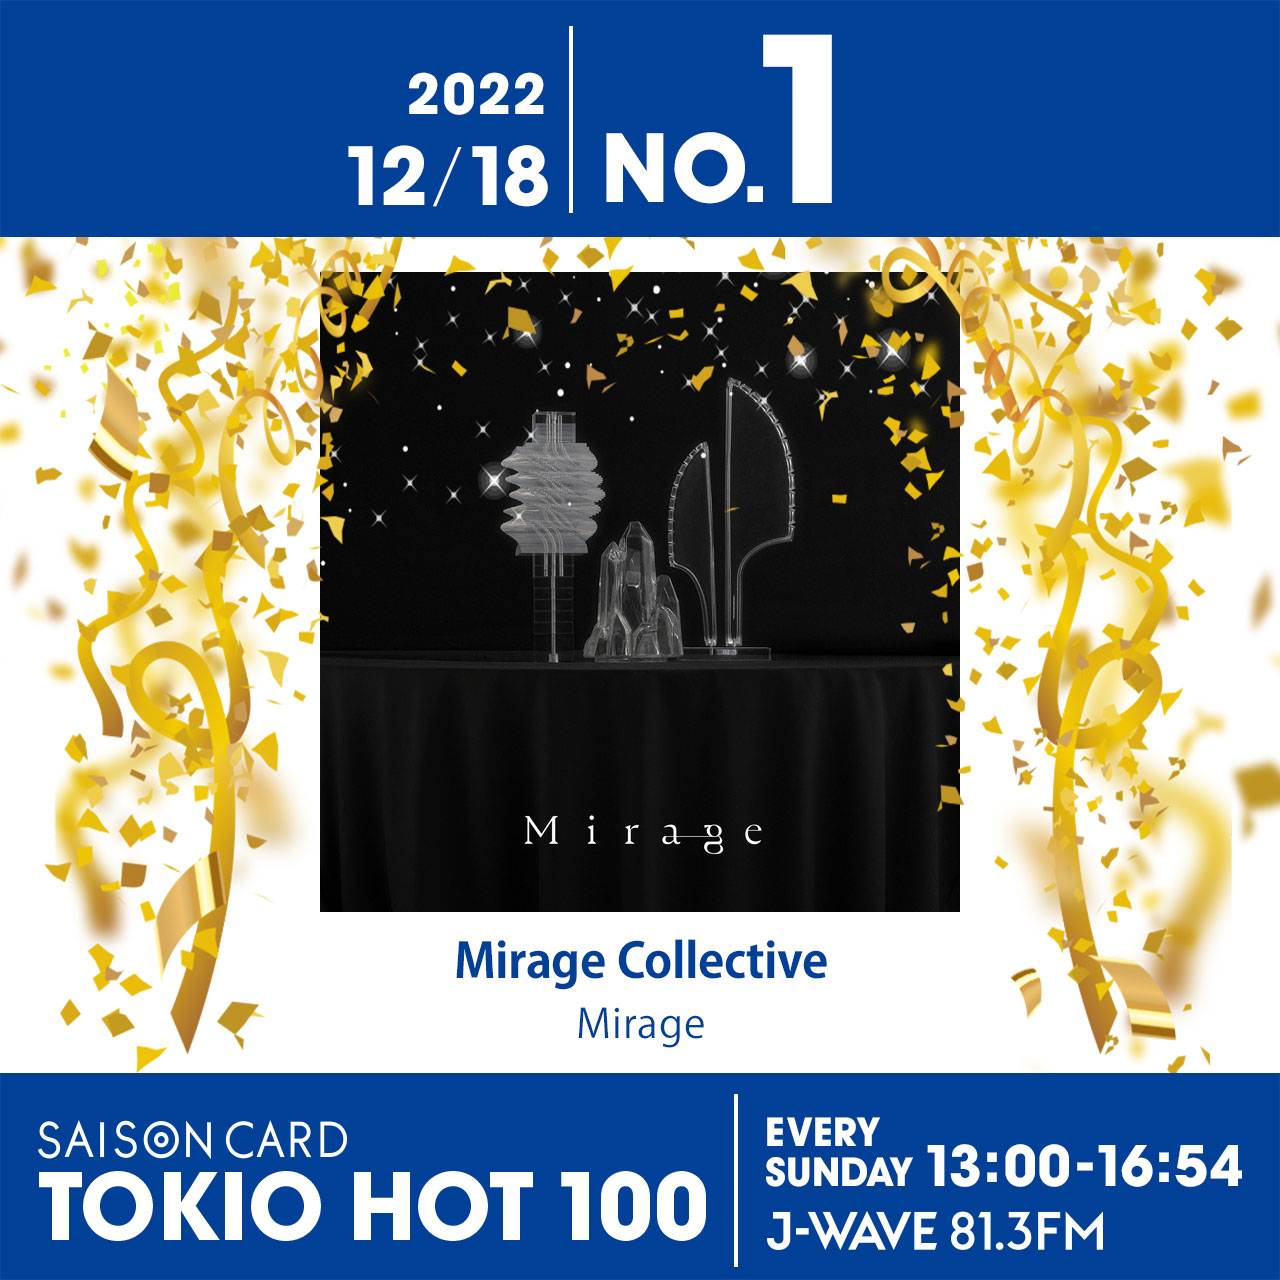 『エルピス』主題歌、Mirage Collective『Mirage - Collective ver. feat. 長澤まさみ』が首位【最新チャート】